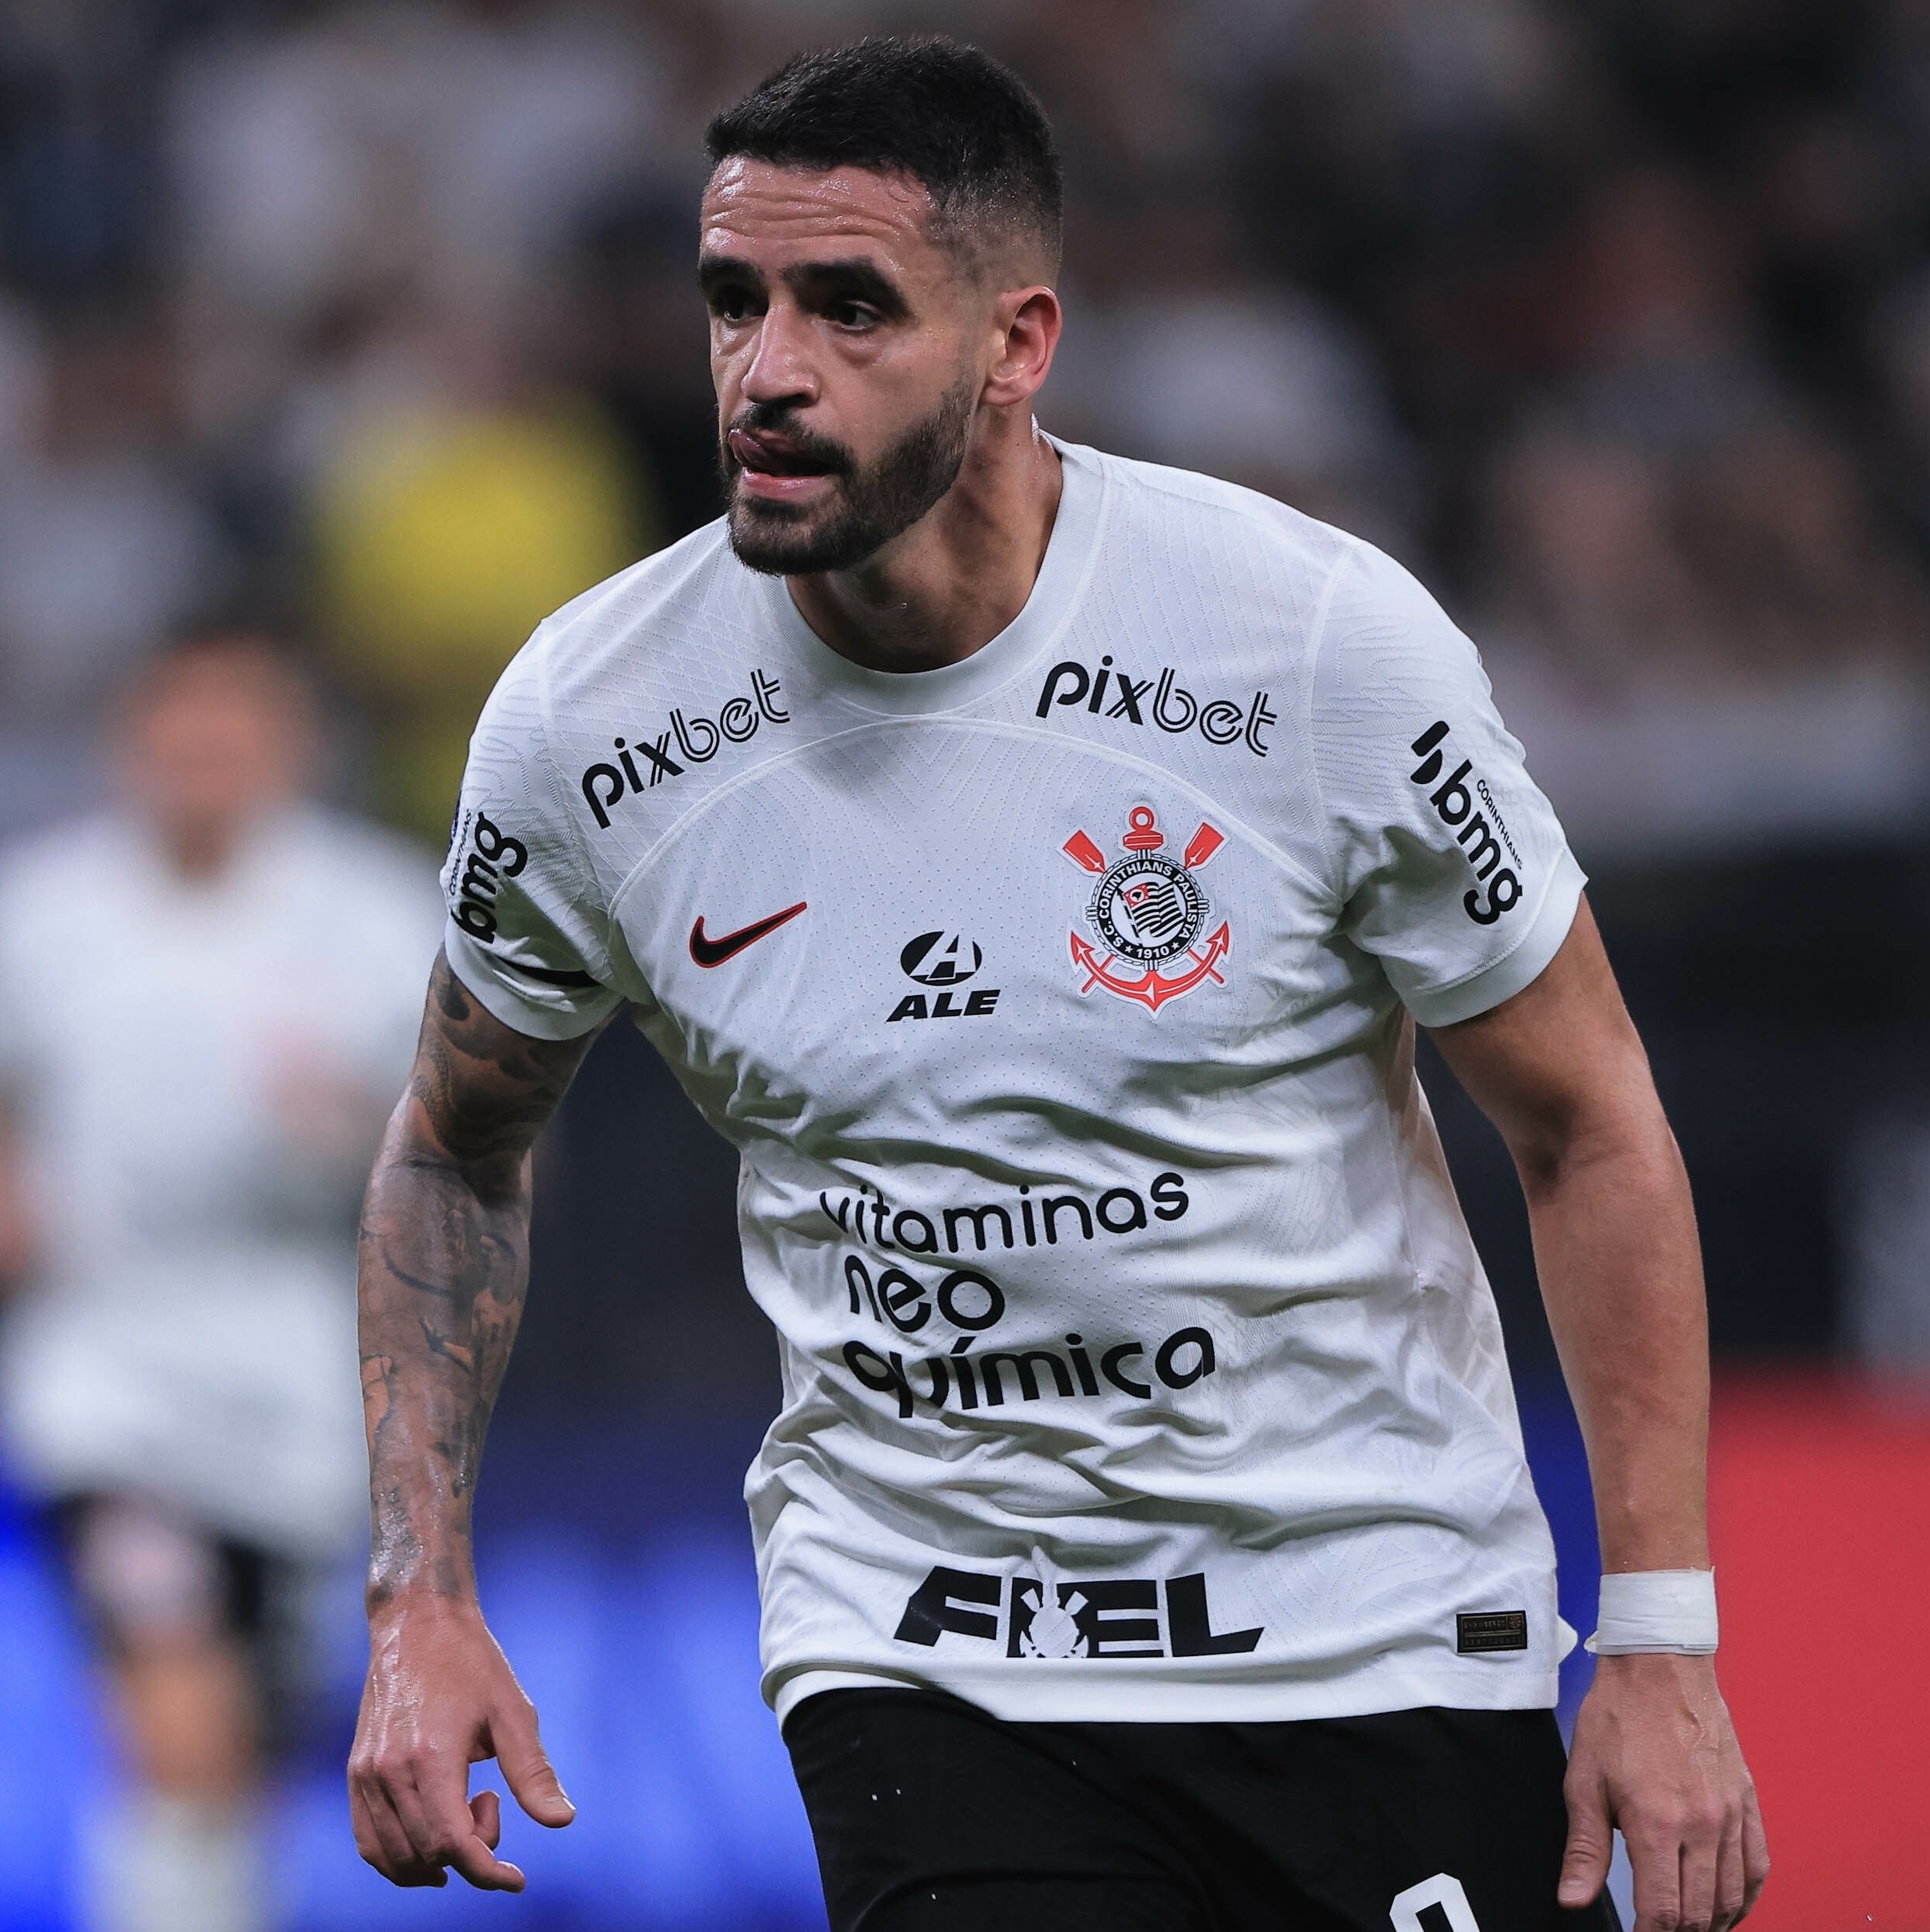 Renato - Player profile 2023